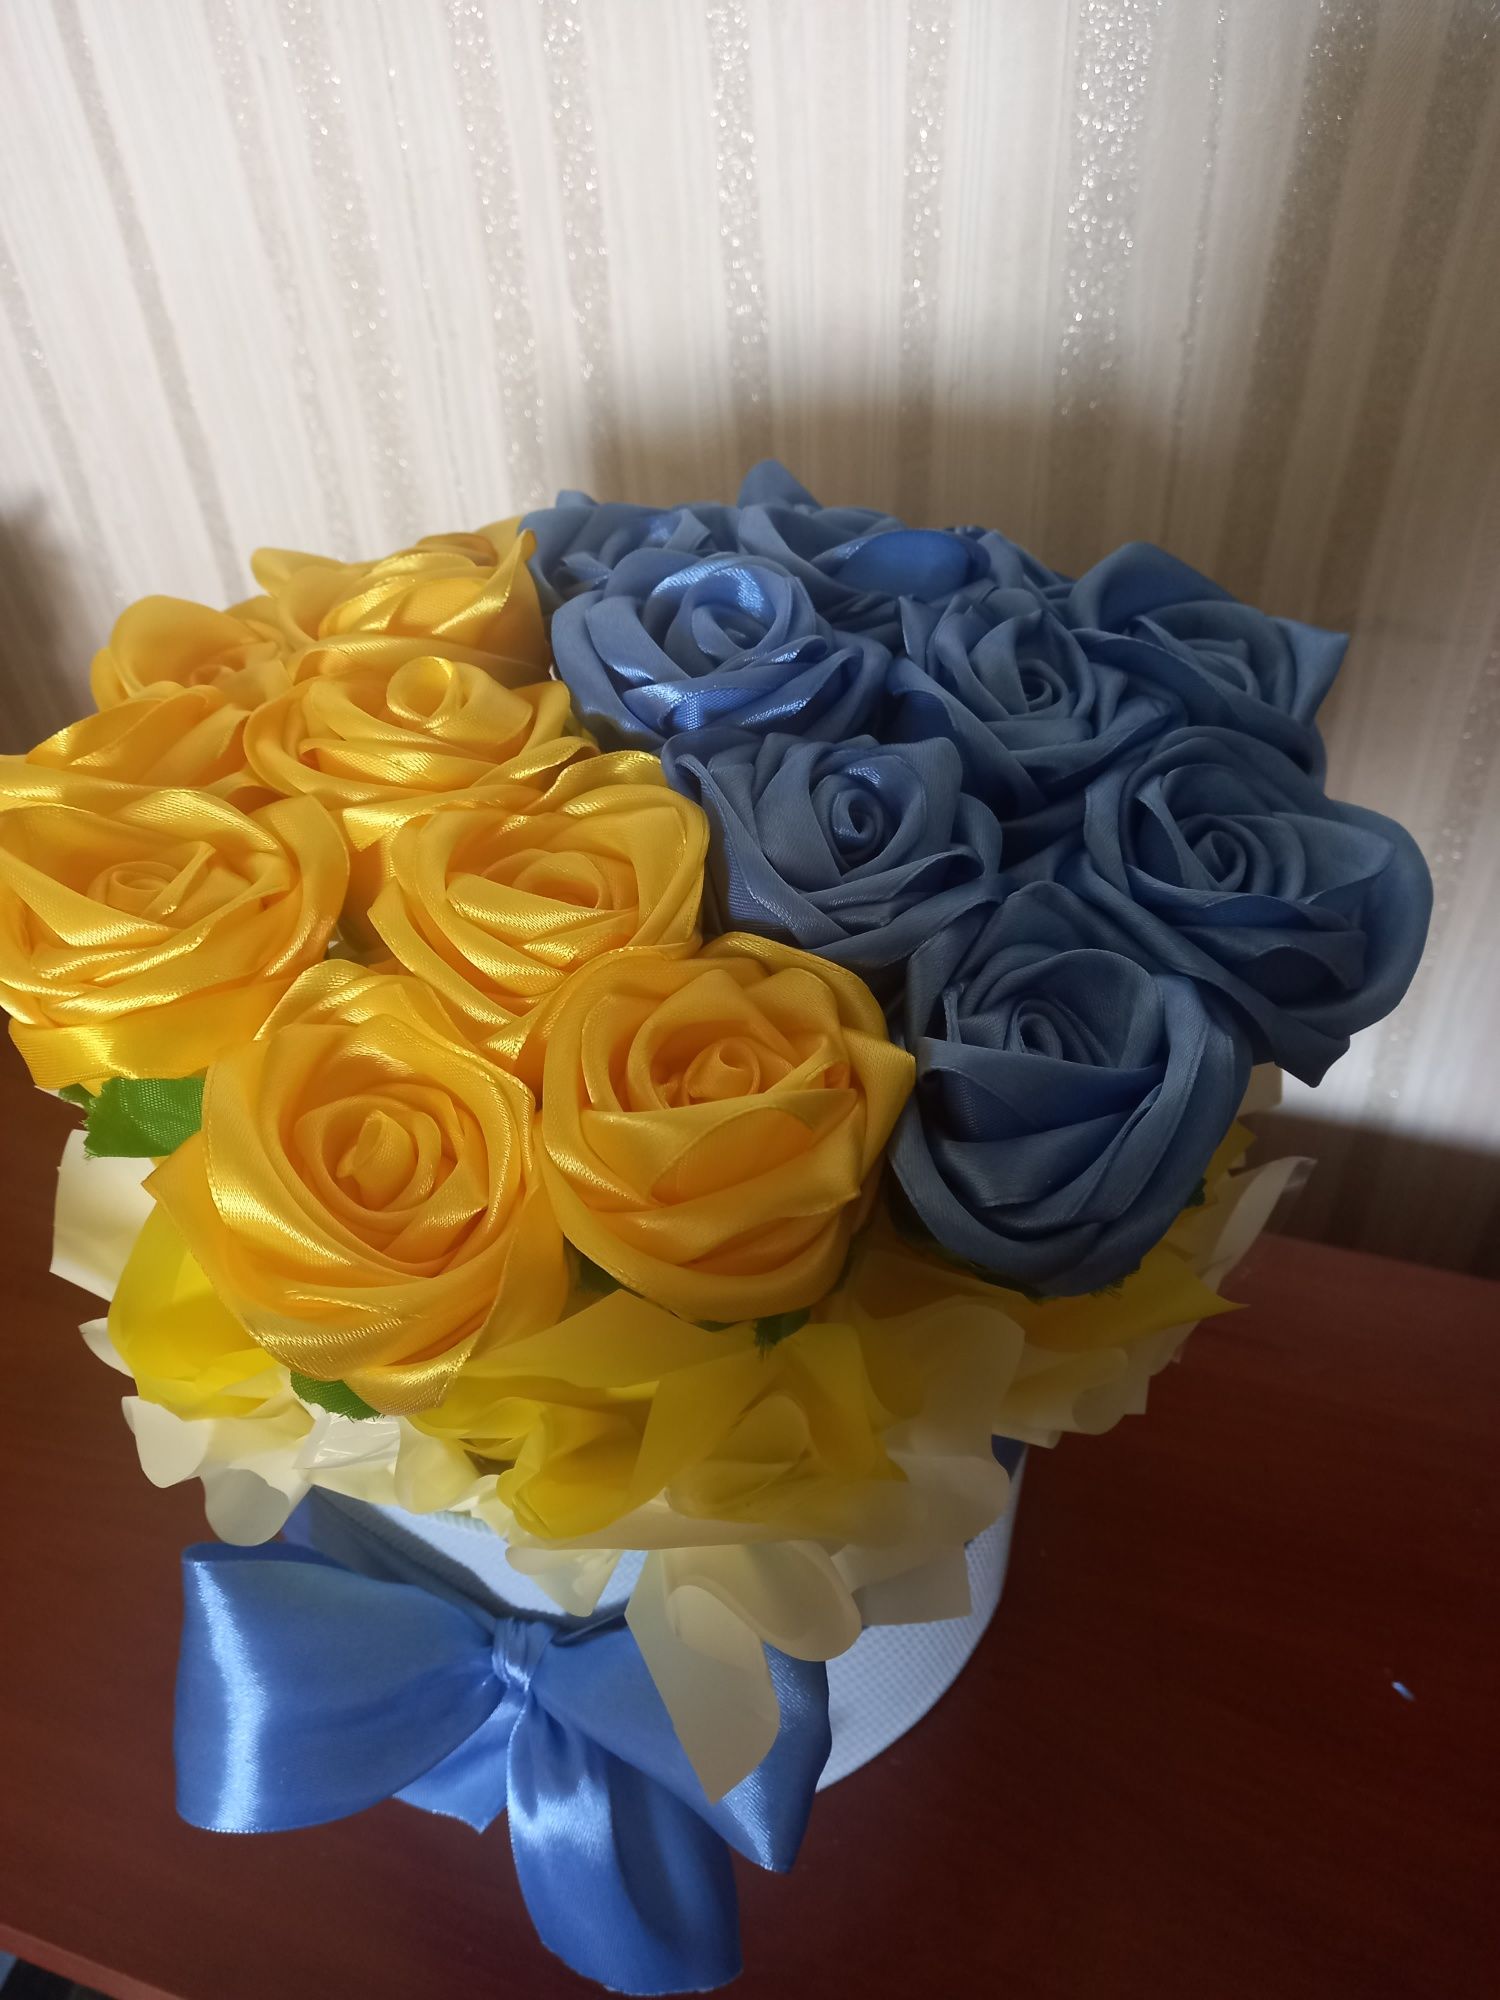 Квіти з атласних стрічок, 21 троянда , ручна робота